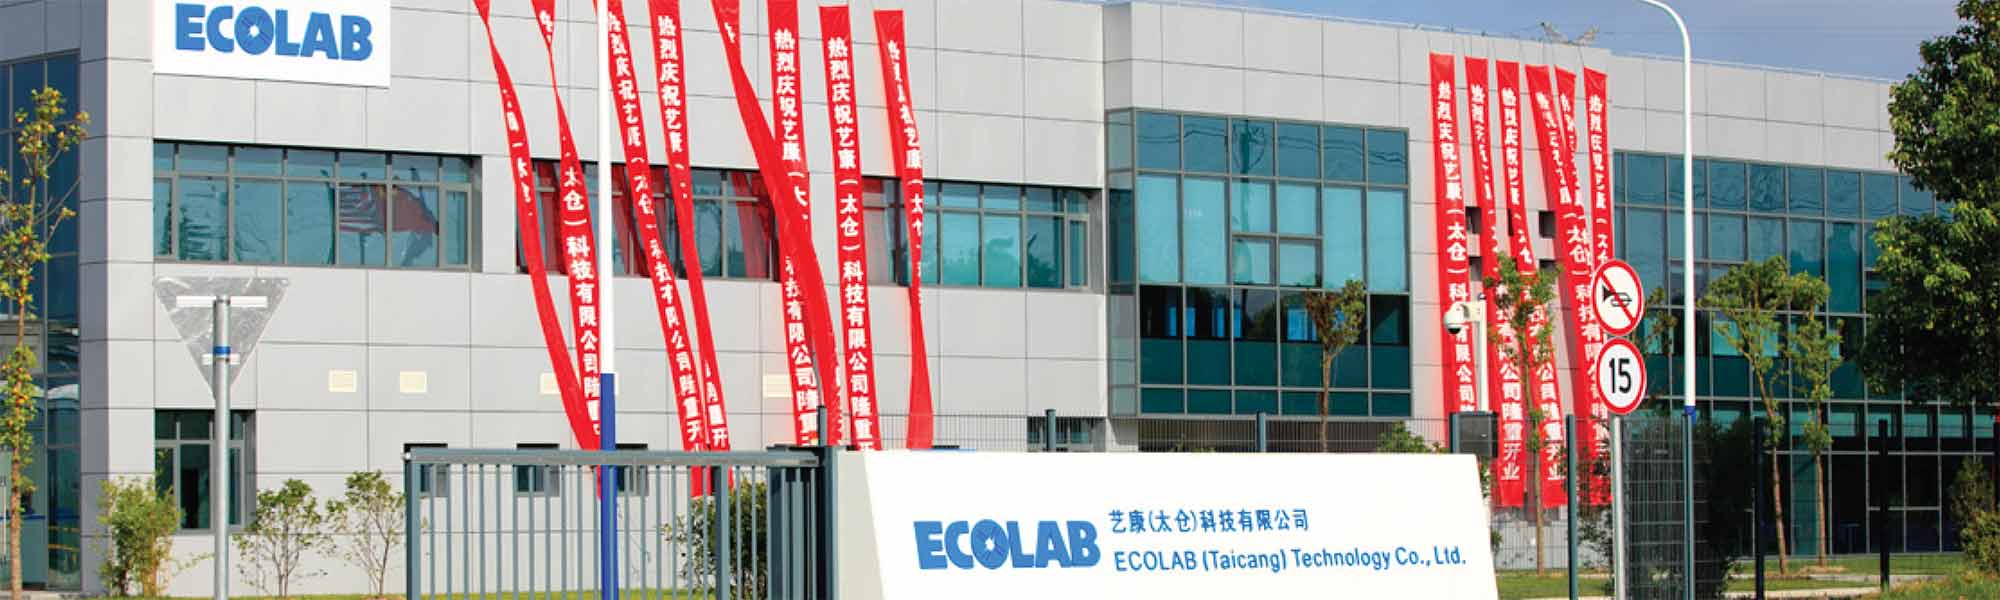 中国太倉市のエコラボ製造工場がウォーター・スチュワードシップ・リーダーに認定